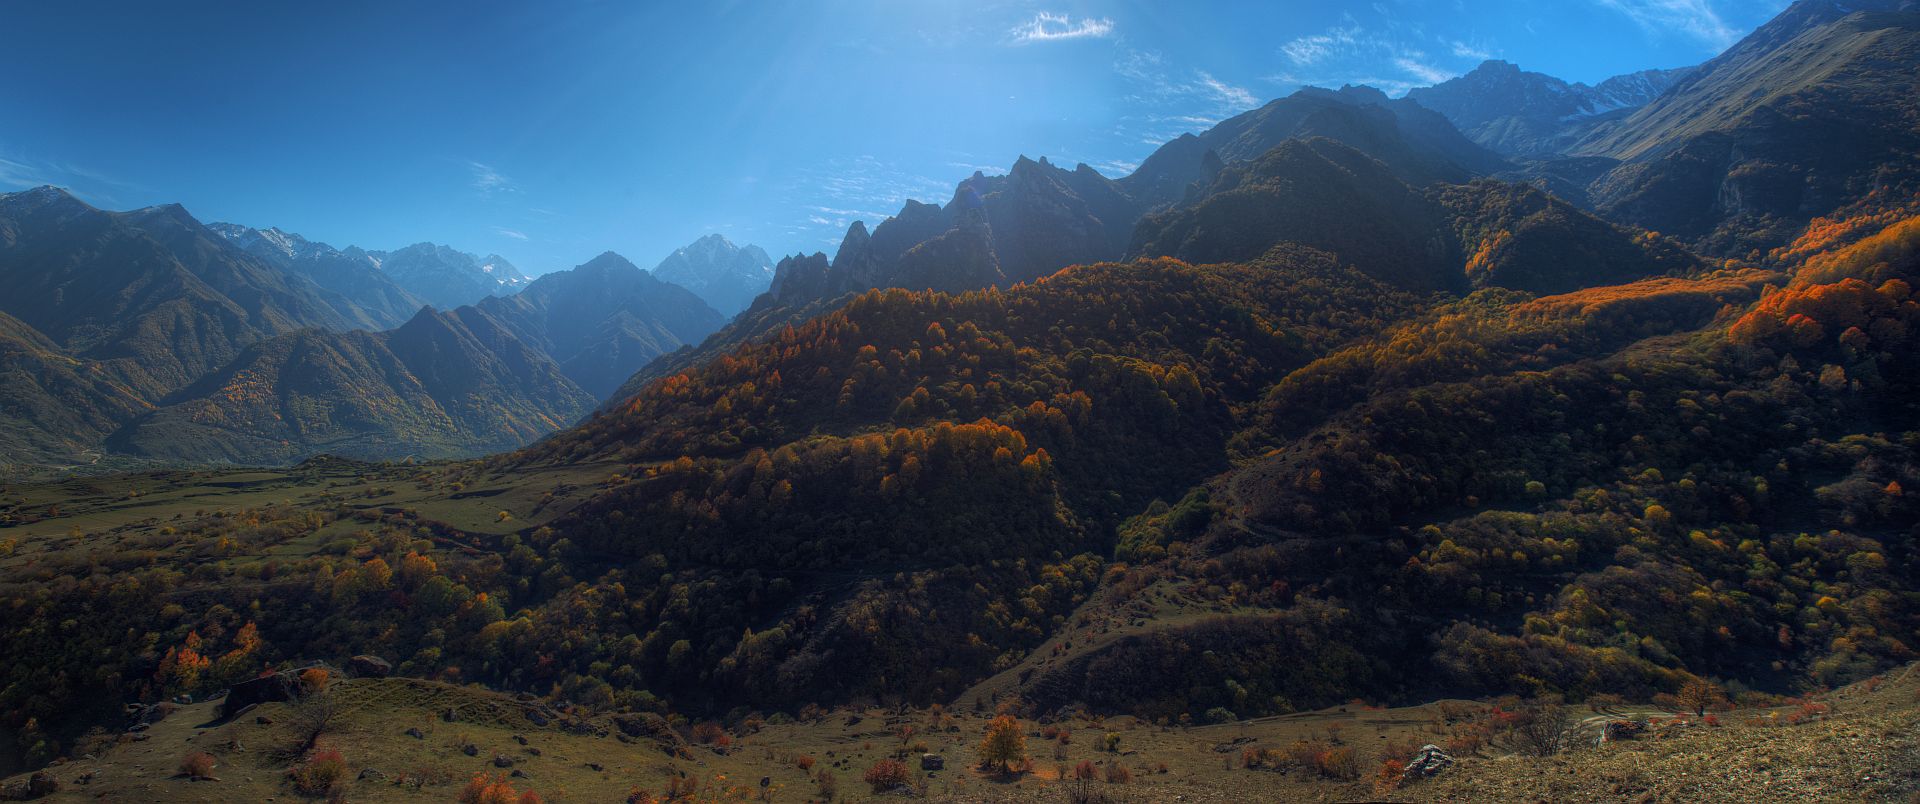 Пейзаж, горы, природа, свет, Кавказ, Кабардино-Балкария, nature, landscape, mountain, Ефимов Александр